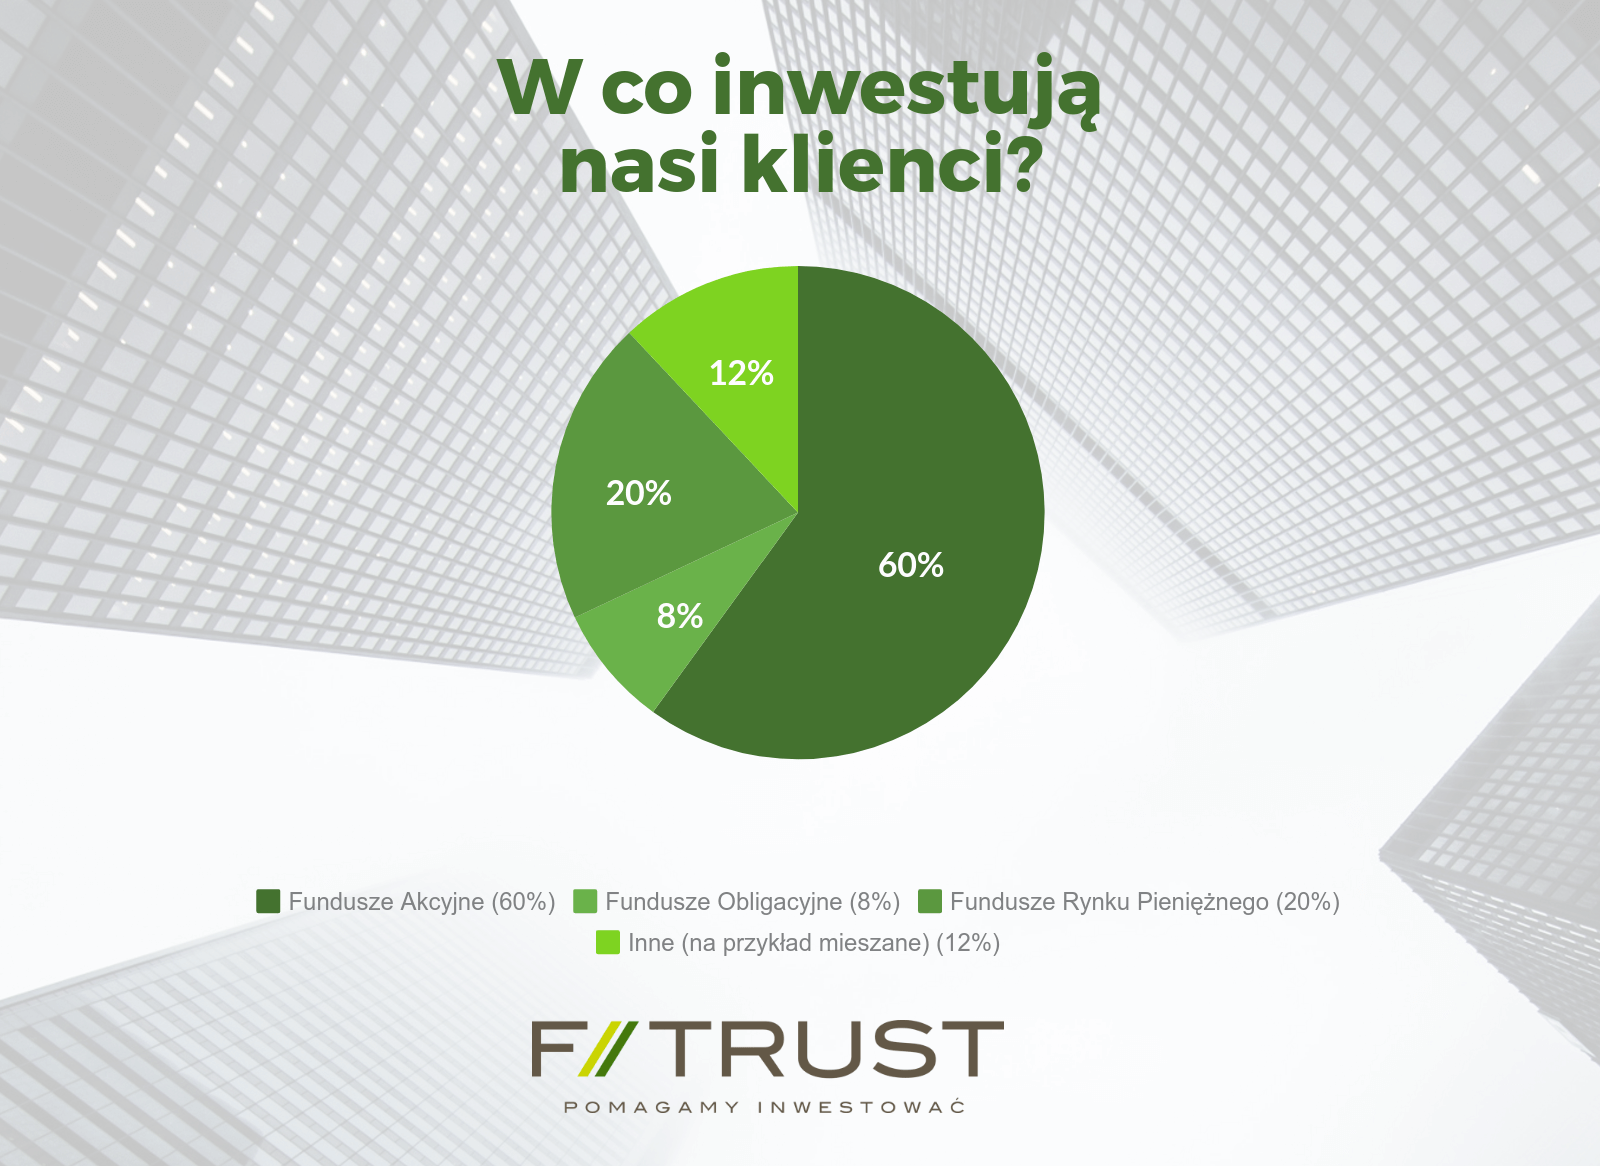 Klienci F-Trust inwestują w różne klasy aktywów